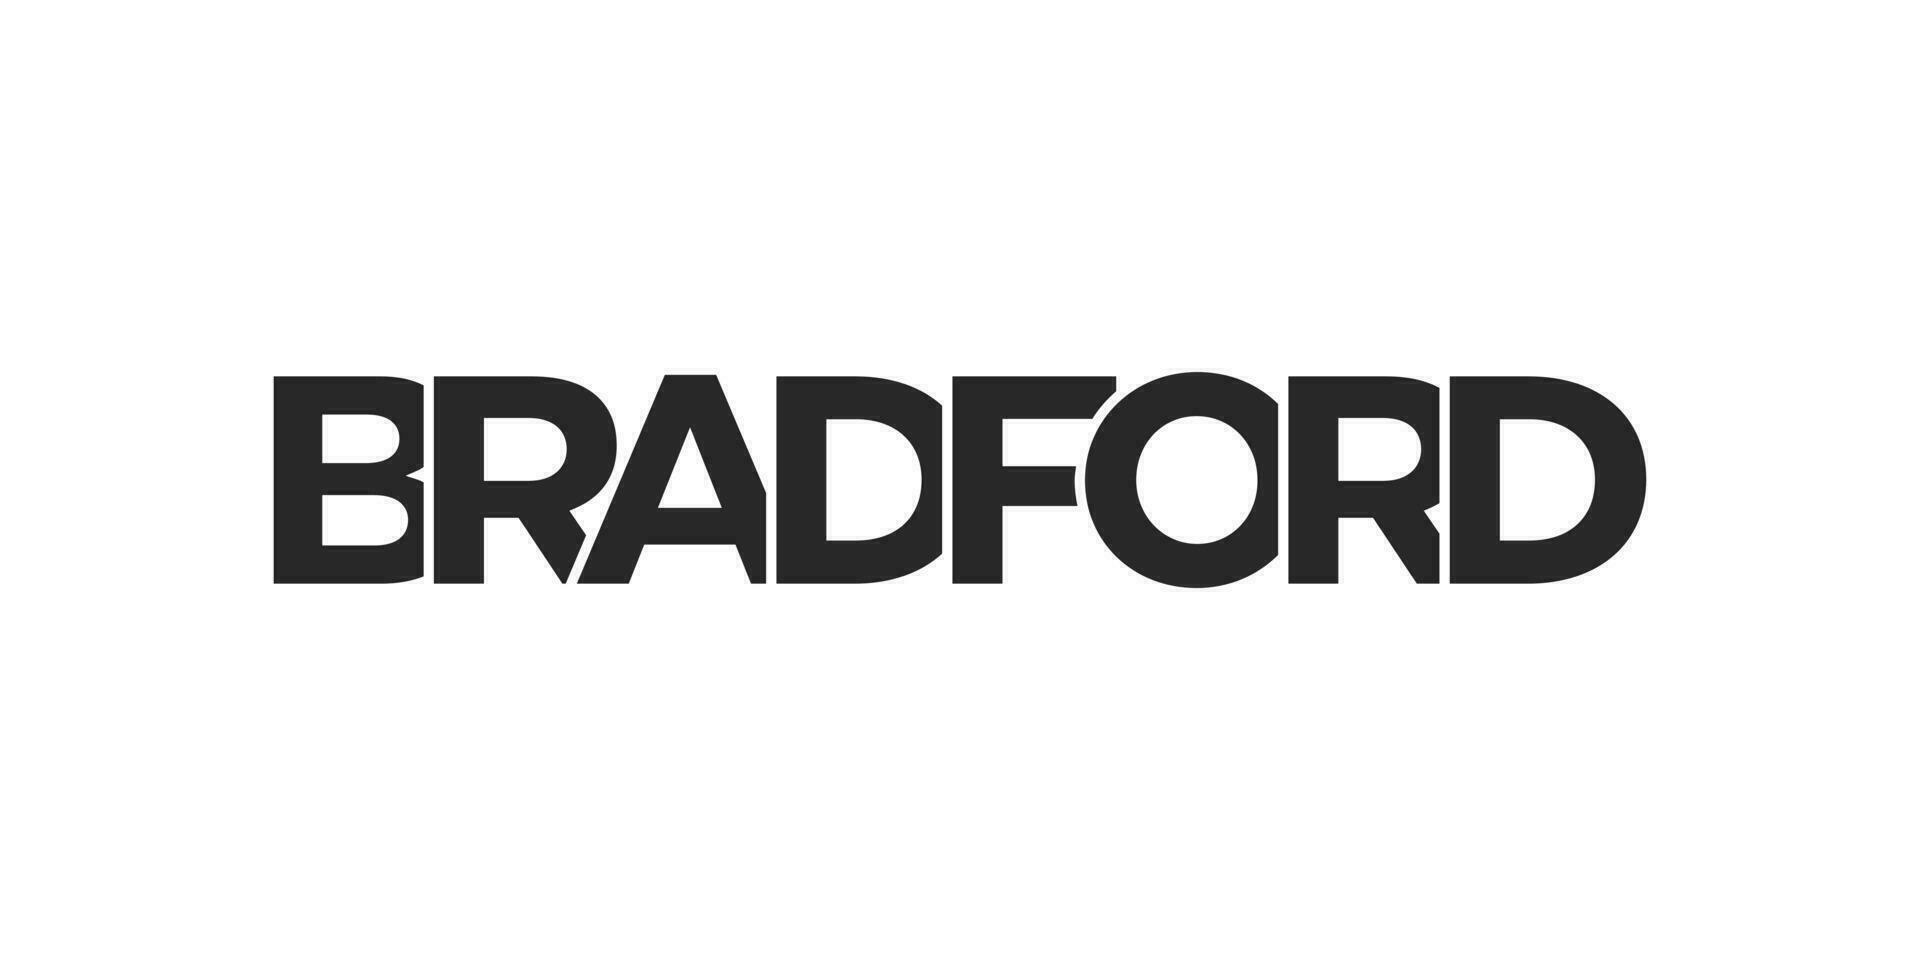 Bradford stad i de förenad rike den där erbjudanden en unik blandning av urban och historisk landmärken. de design funktioner en geometrisk stil illustration med djärv typografi i en modern vektor